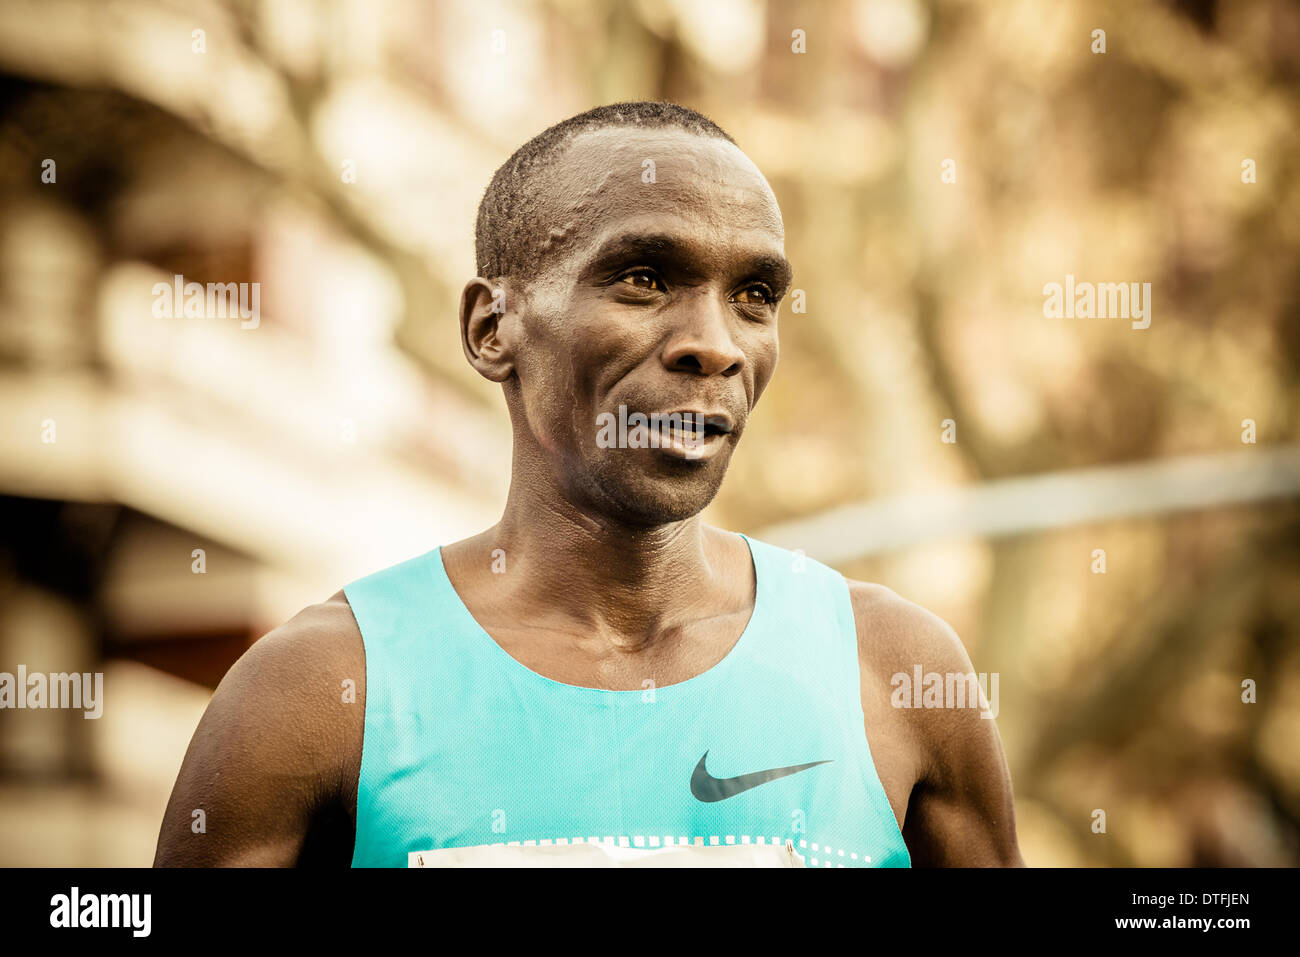 Barcelone, Espagne. 16 février 2014. Du Kenya : Eliud Kipchoge remporte la 24e édition du semi-marathon de Barcelone en un temps de 1:00:52 © matthi/Alamy Live News Crédit : matthi/Alamy Live News Banque D'Images